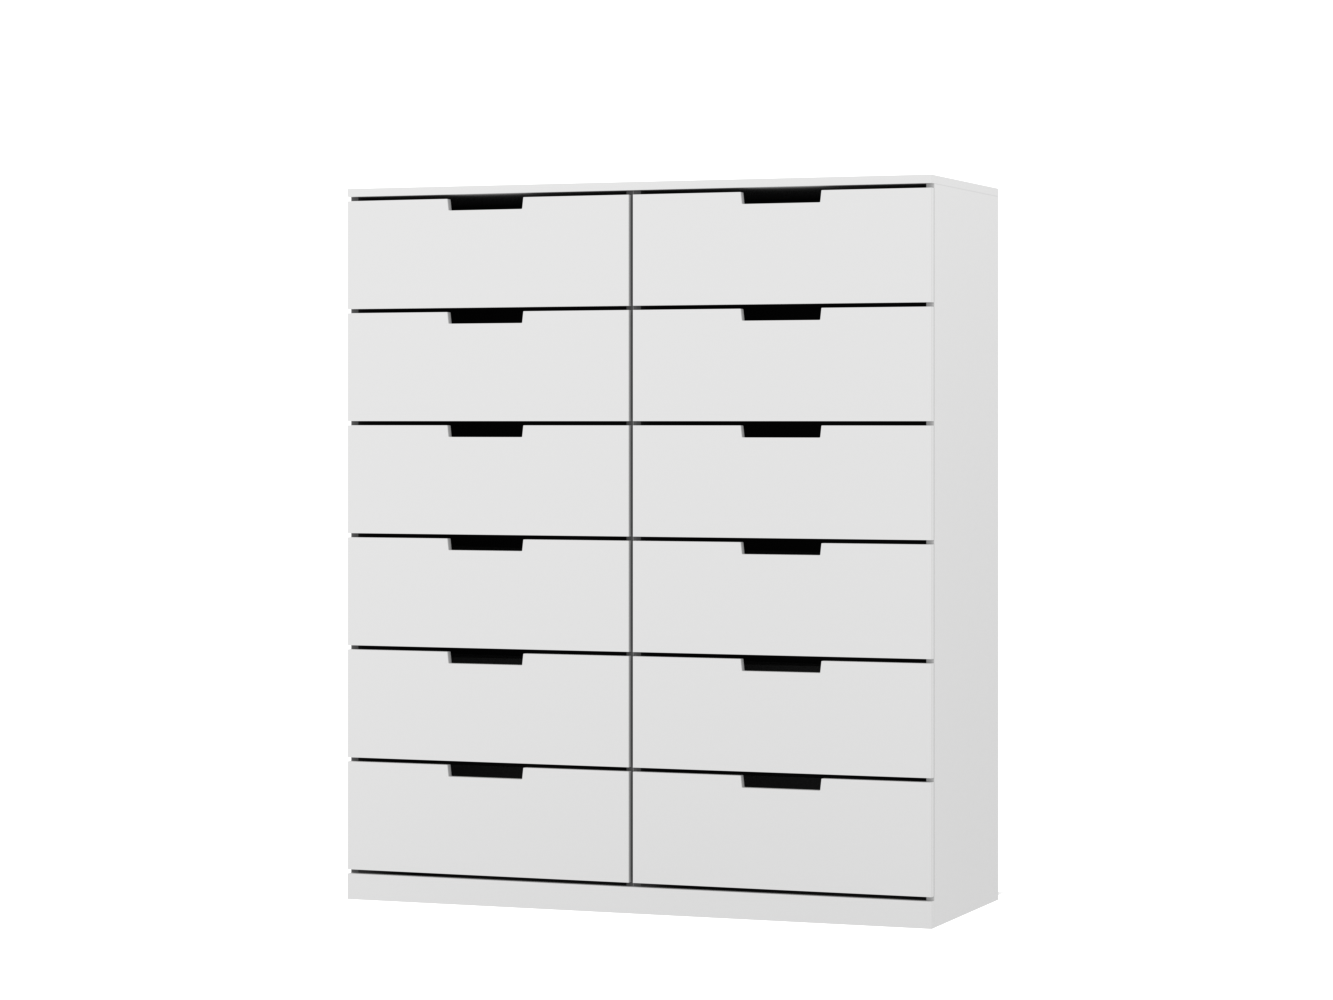  Комод Нордли 16 white ИКЕА (IKEA) изображение товара